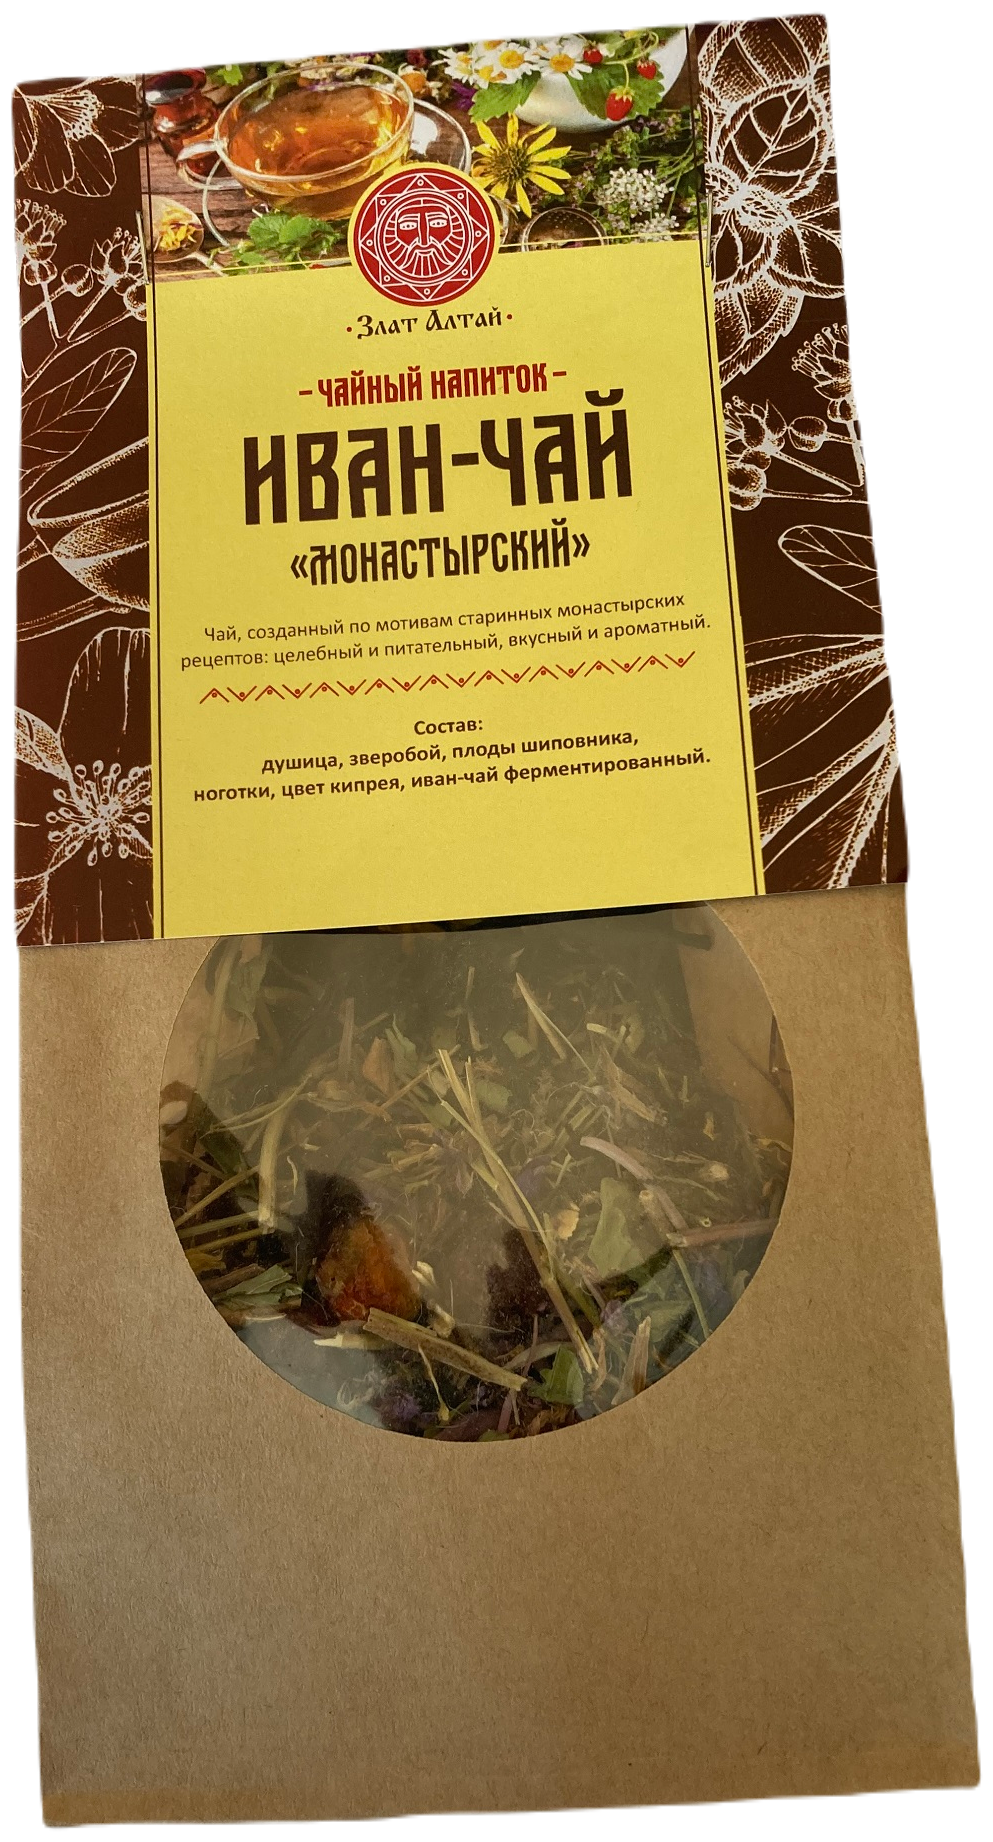 Иван-чай "Монастырский" 50 грамм